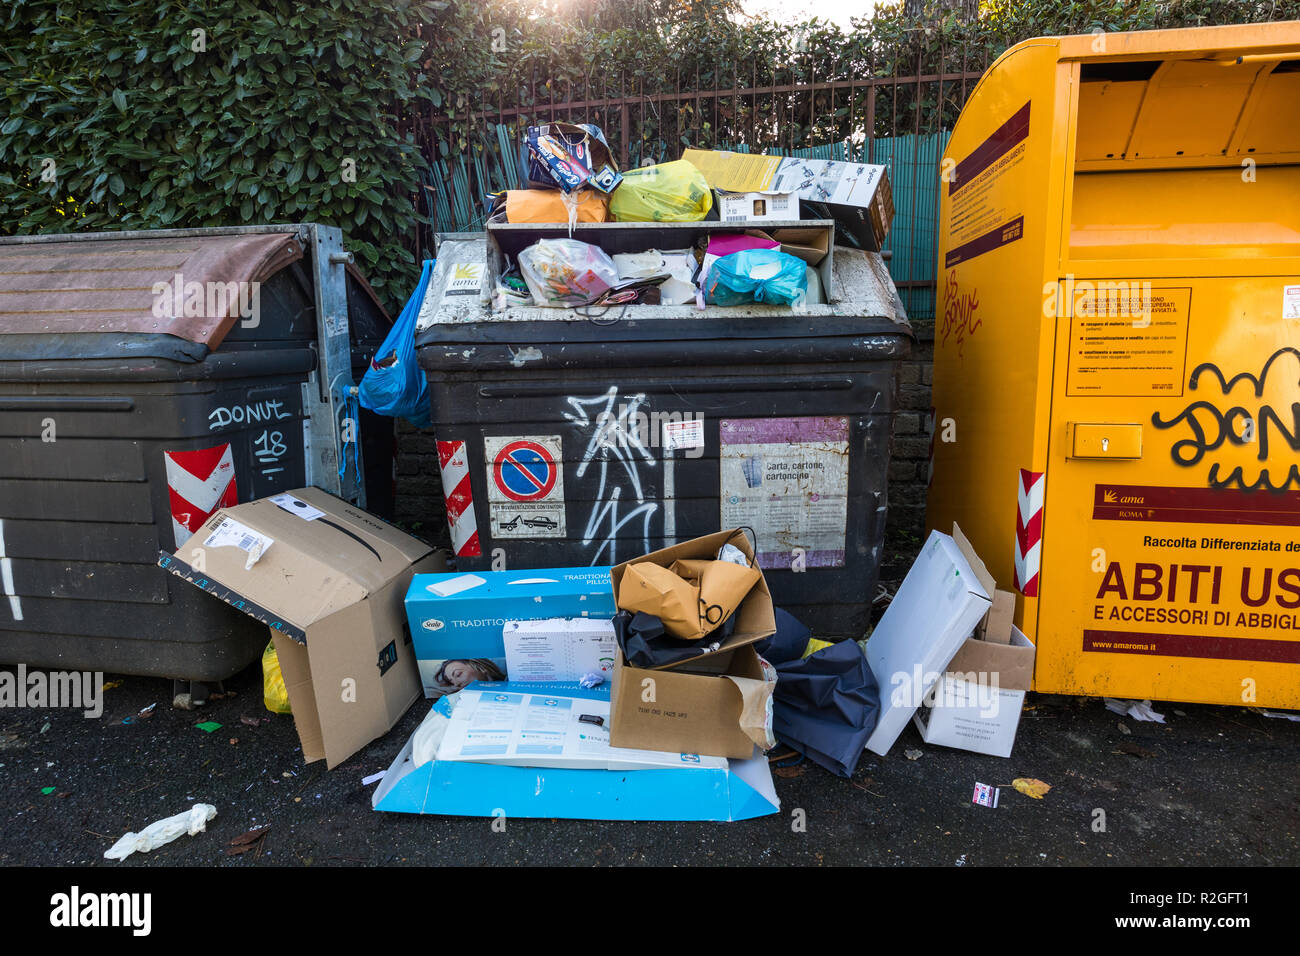 Trahs de débordement des poubelles dans les rues de Rome, Italie Banque D'Images